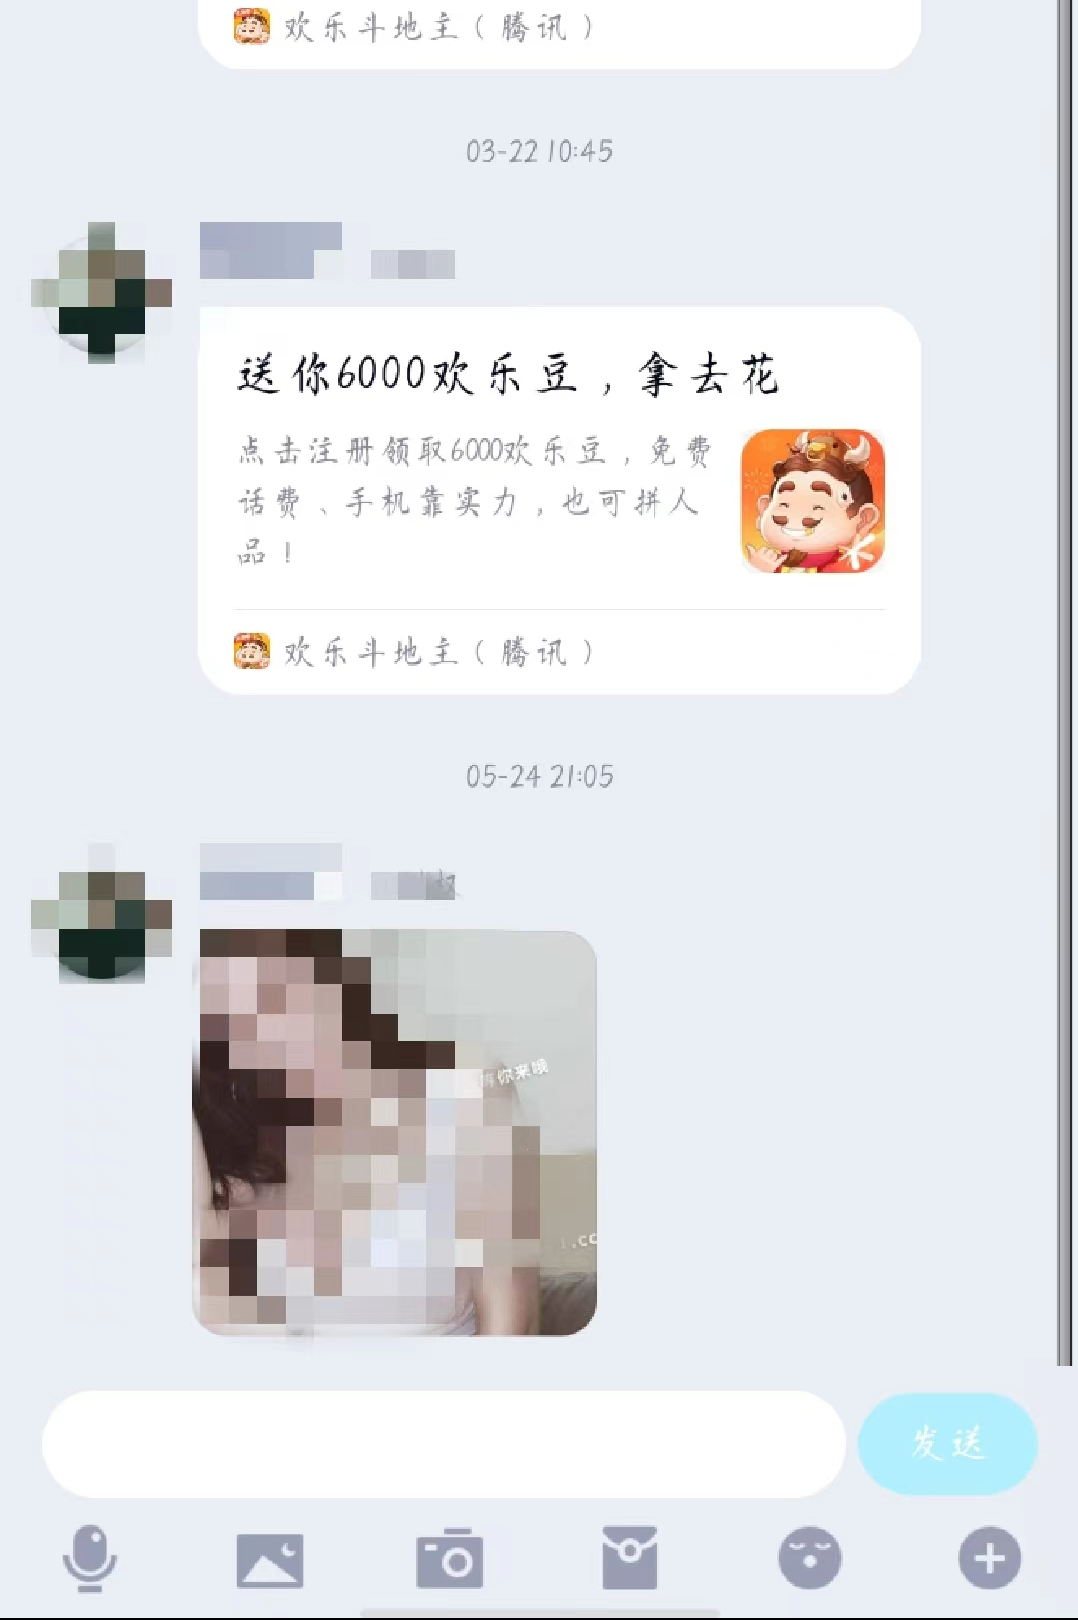 近日QQ账号频繁被盗，还给好友发送色情信息